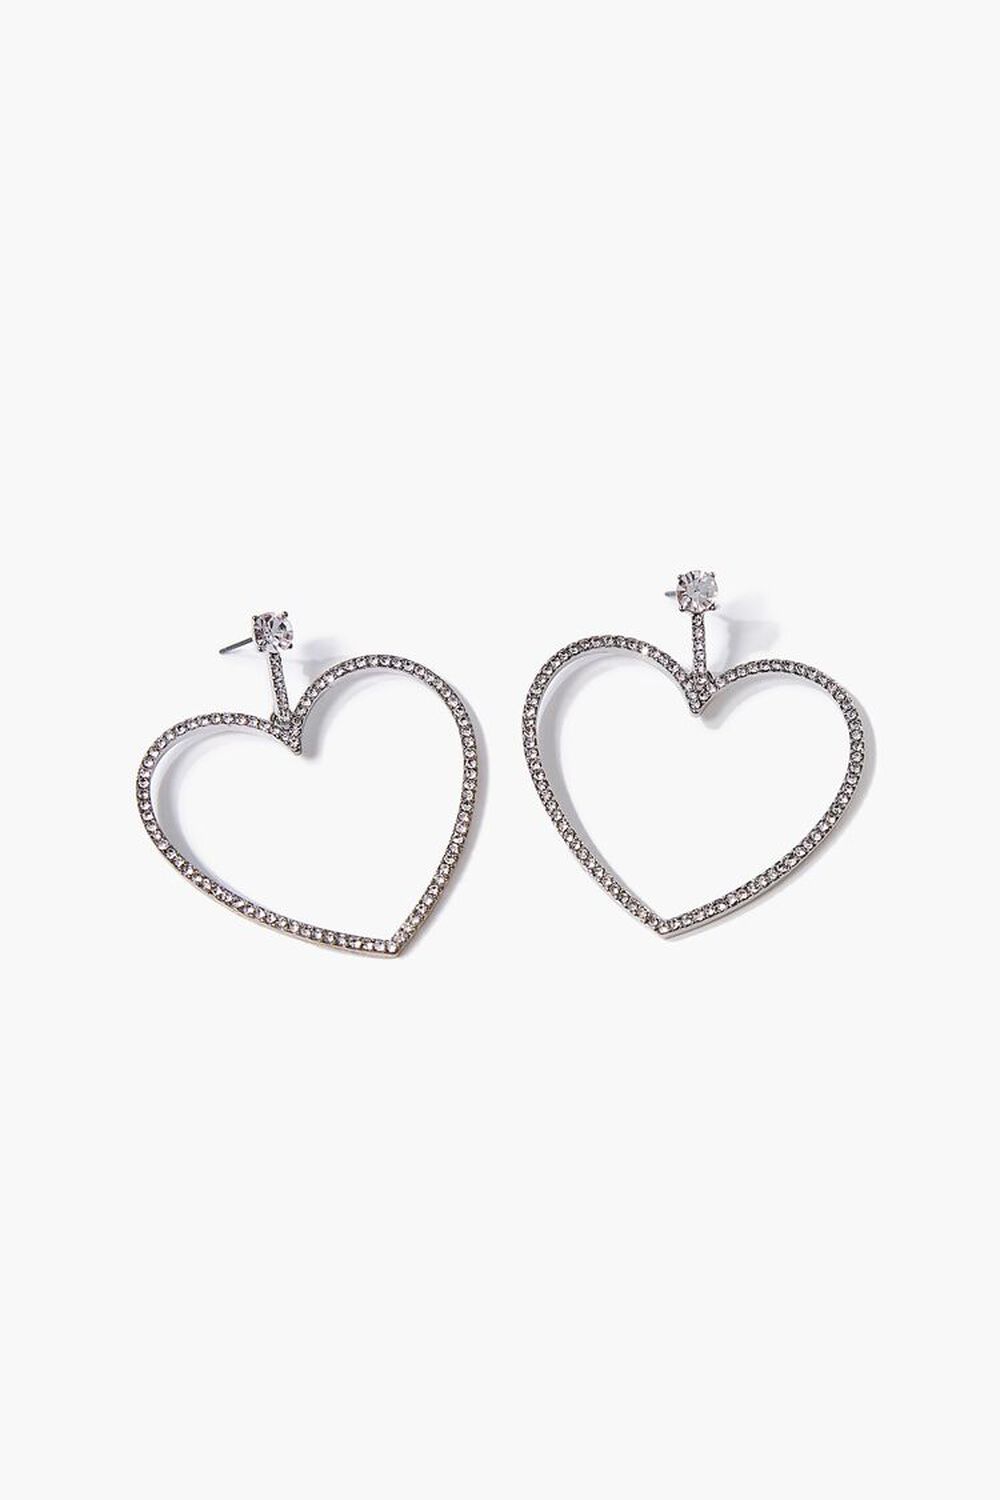 SILVER/CLEAR Rhinestone Heart Drop Earrings, image 1